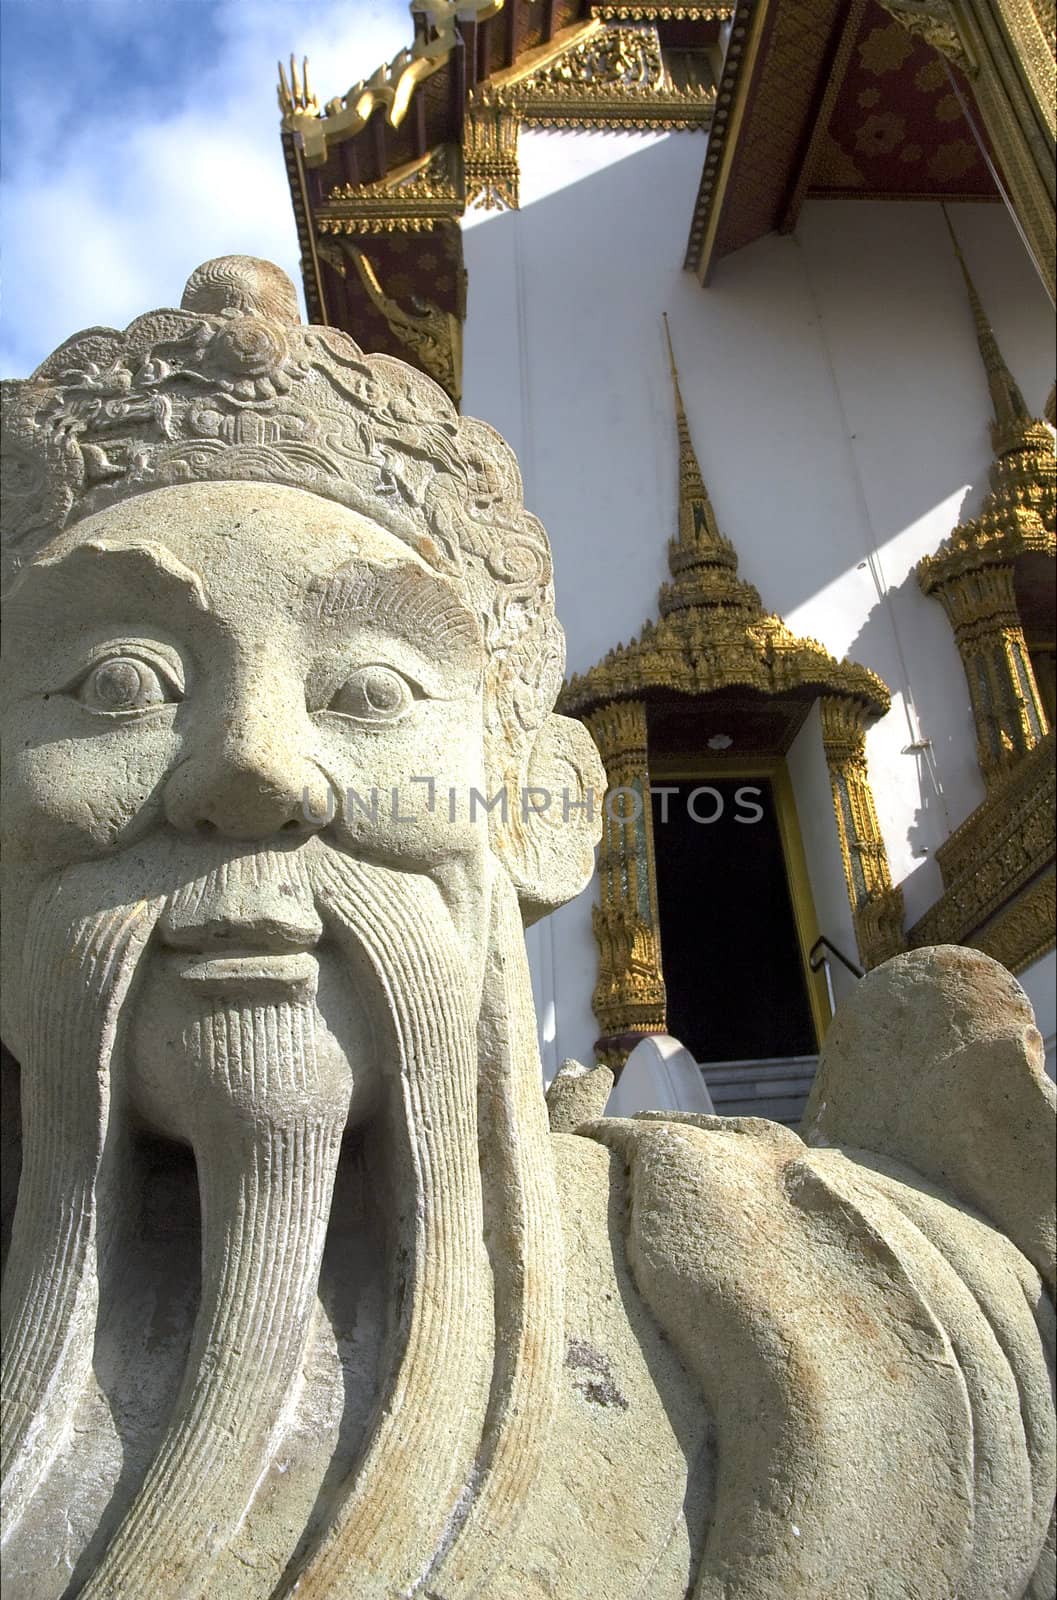 Statue at Bangkok's Royal Palace